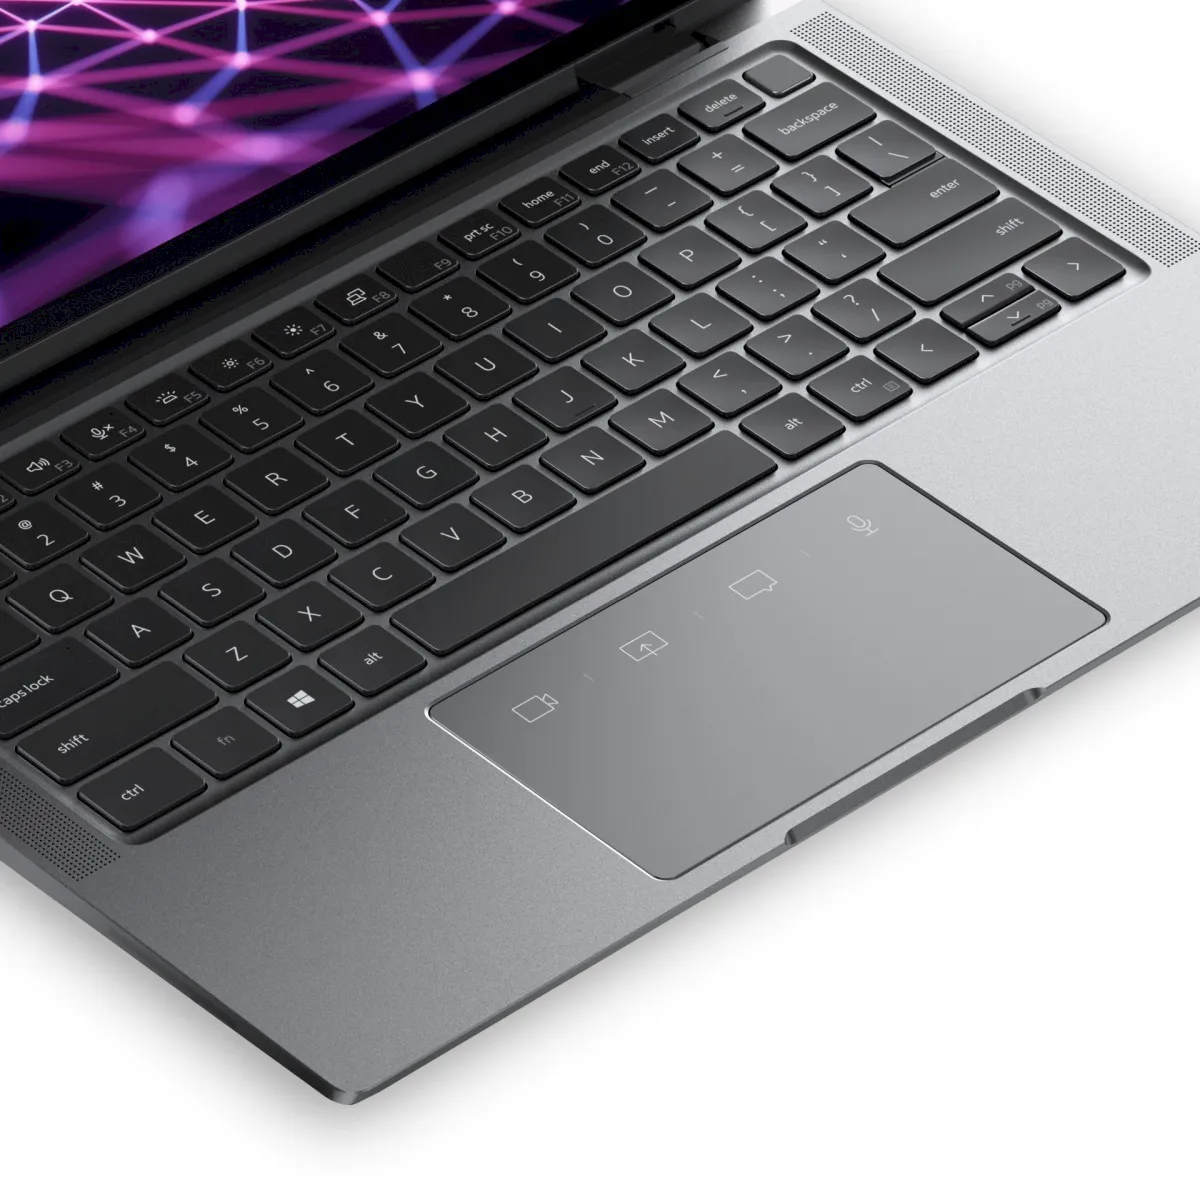 Dell Latitude 9330, um portátil compacto com um touchpad de colaboração